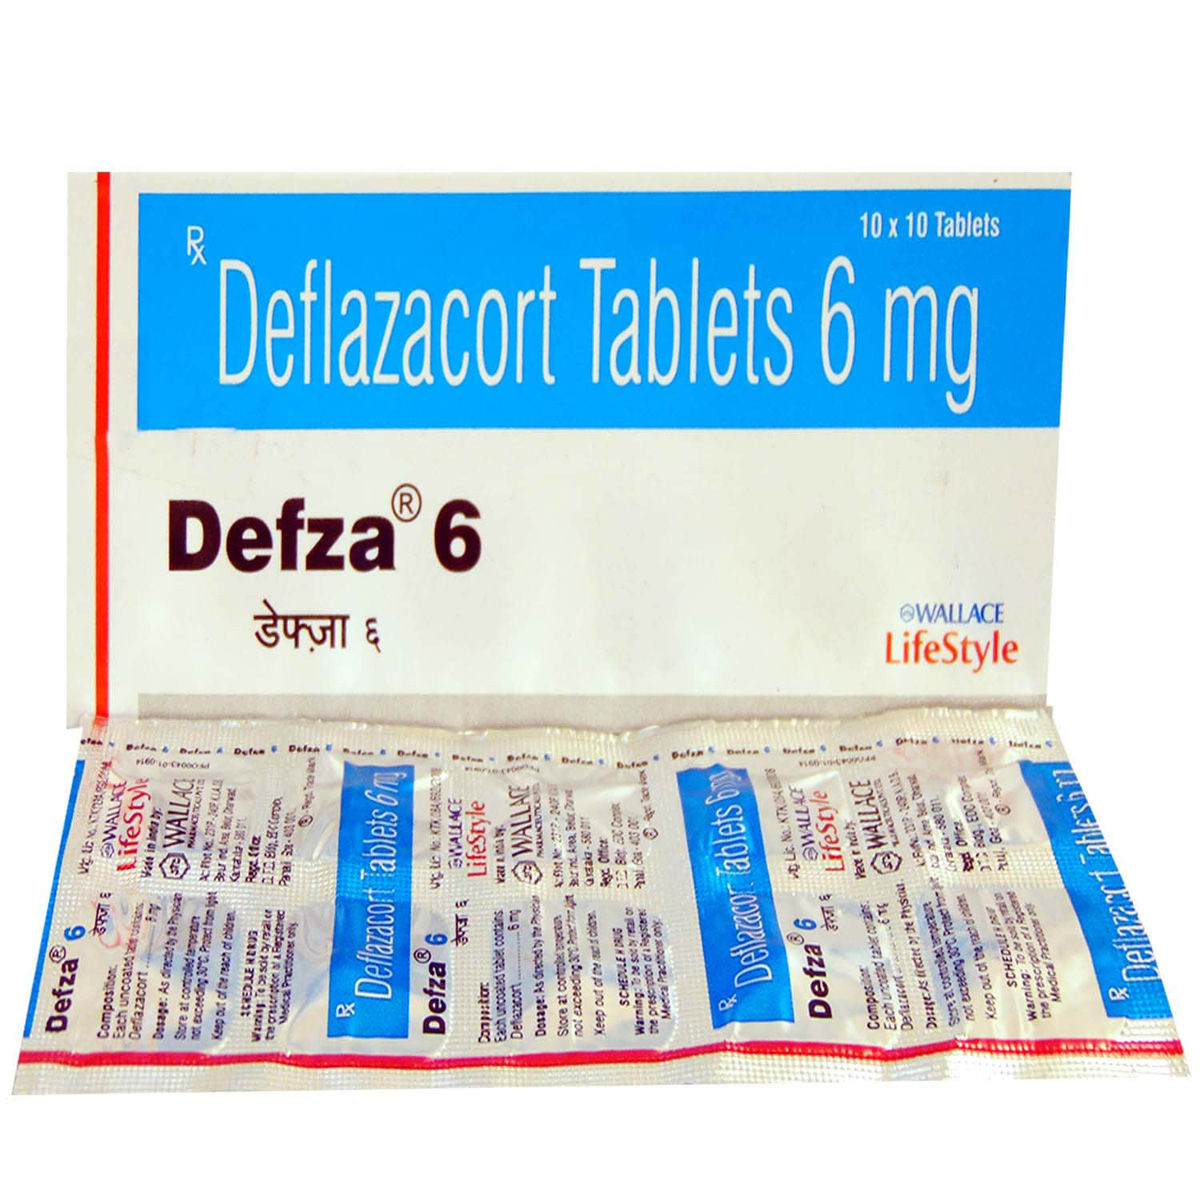 Defza 6 Tablet 10's, Pack of 10 TABLETS